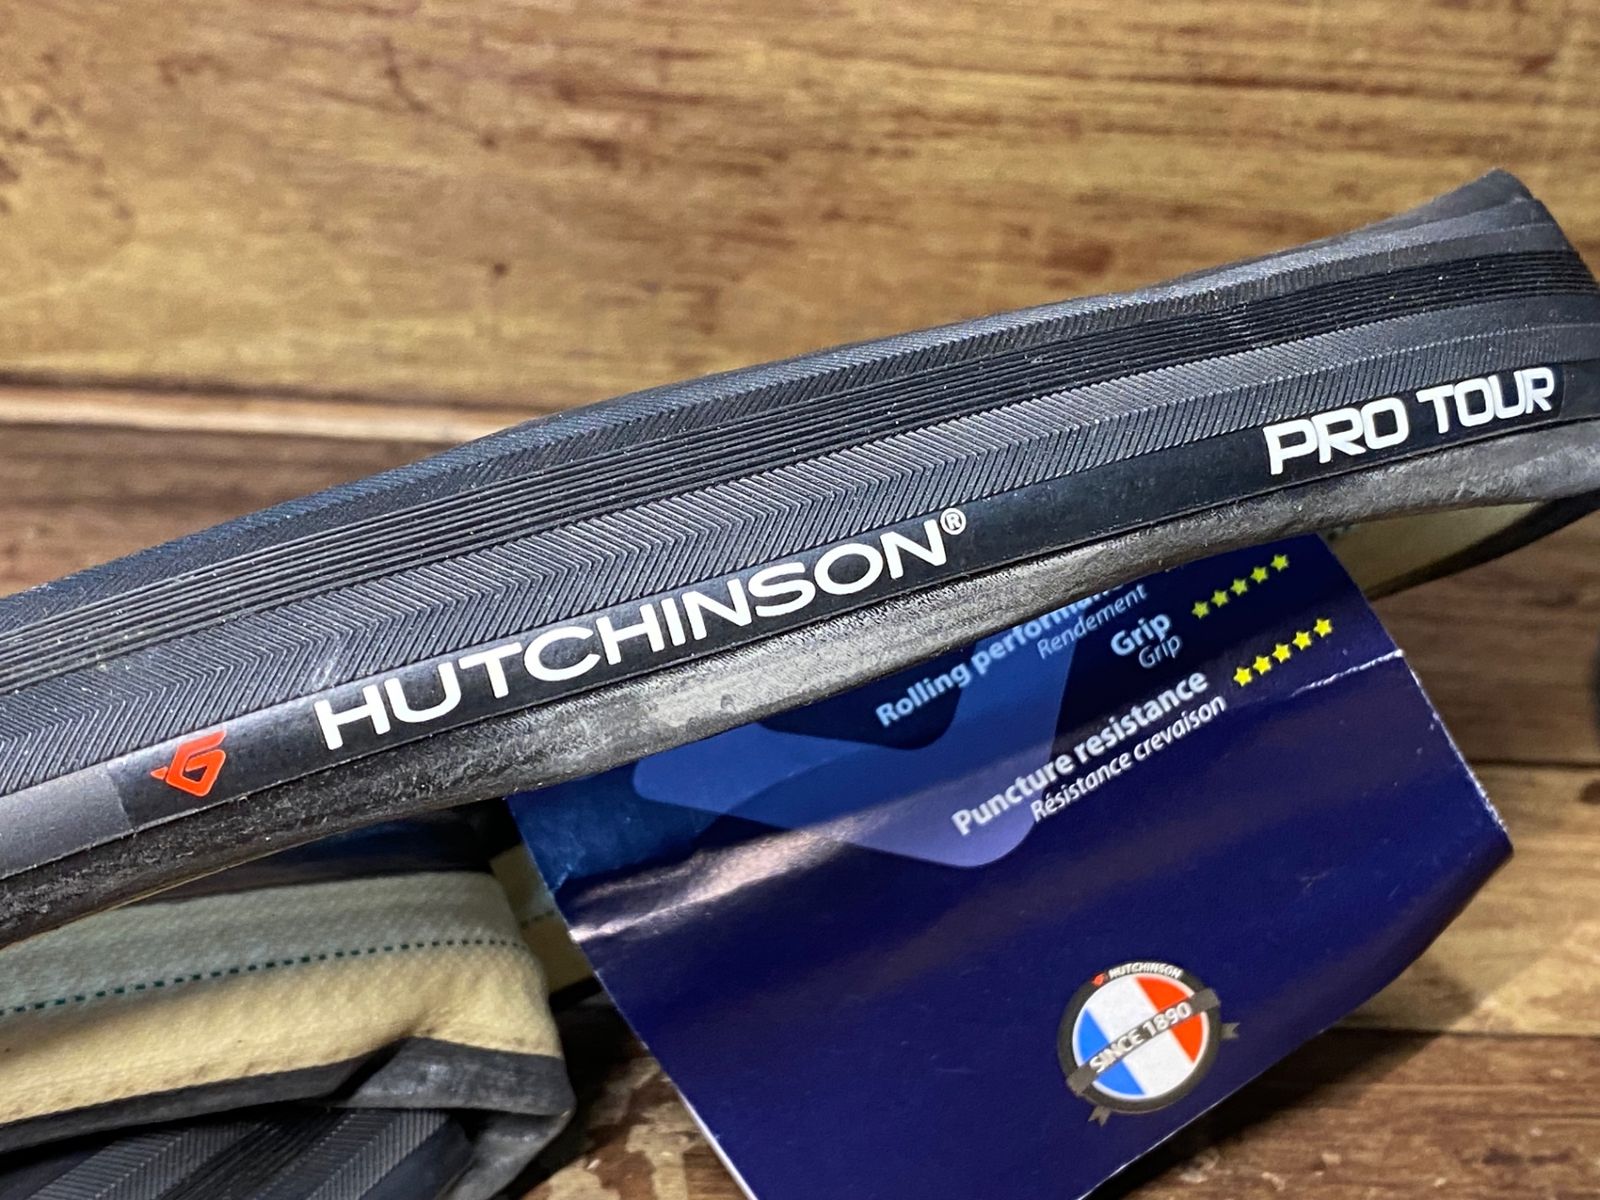 HU877 ハッチンソン HUTCHINSON プロツアー PRO TOUR チューブラー 